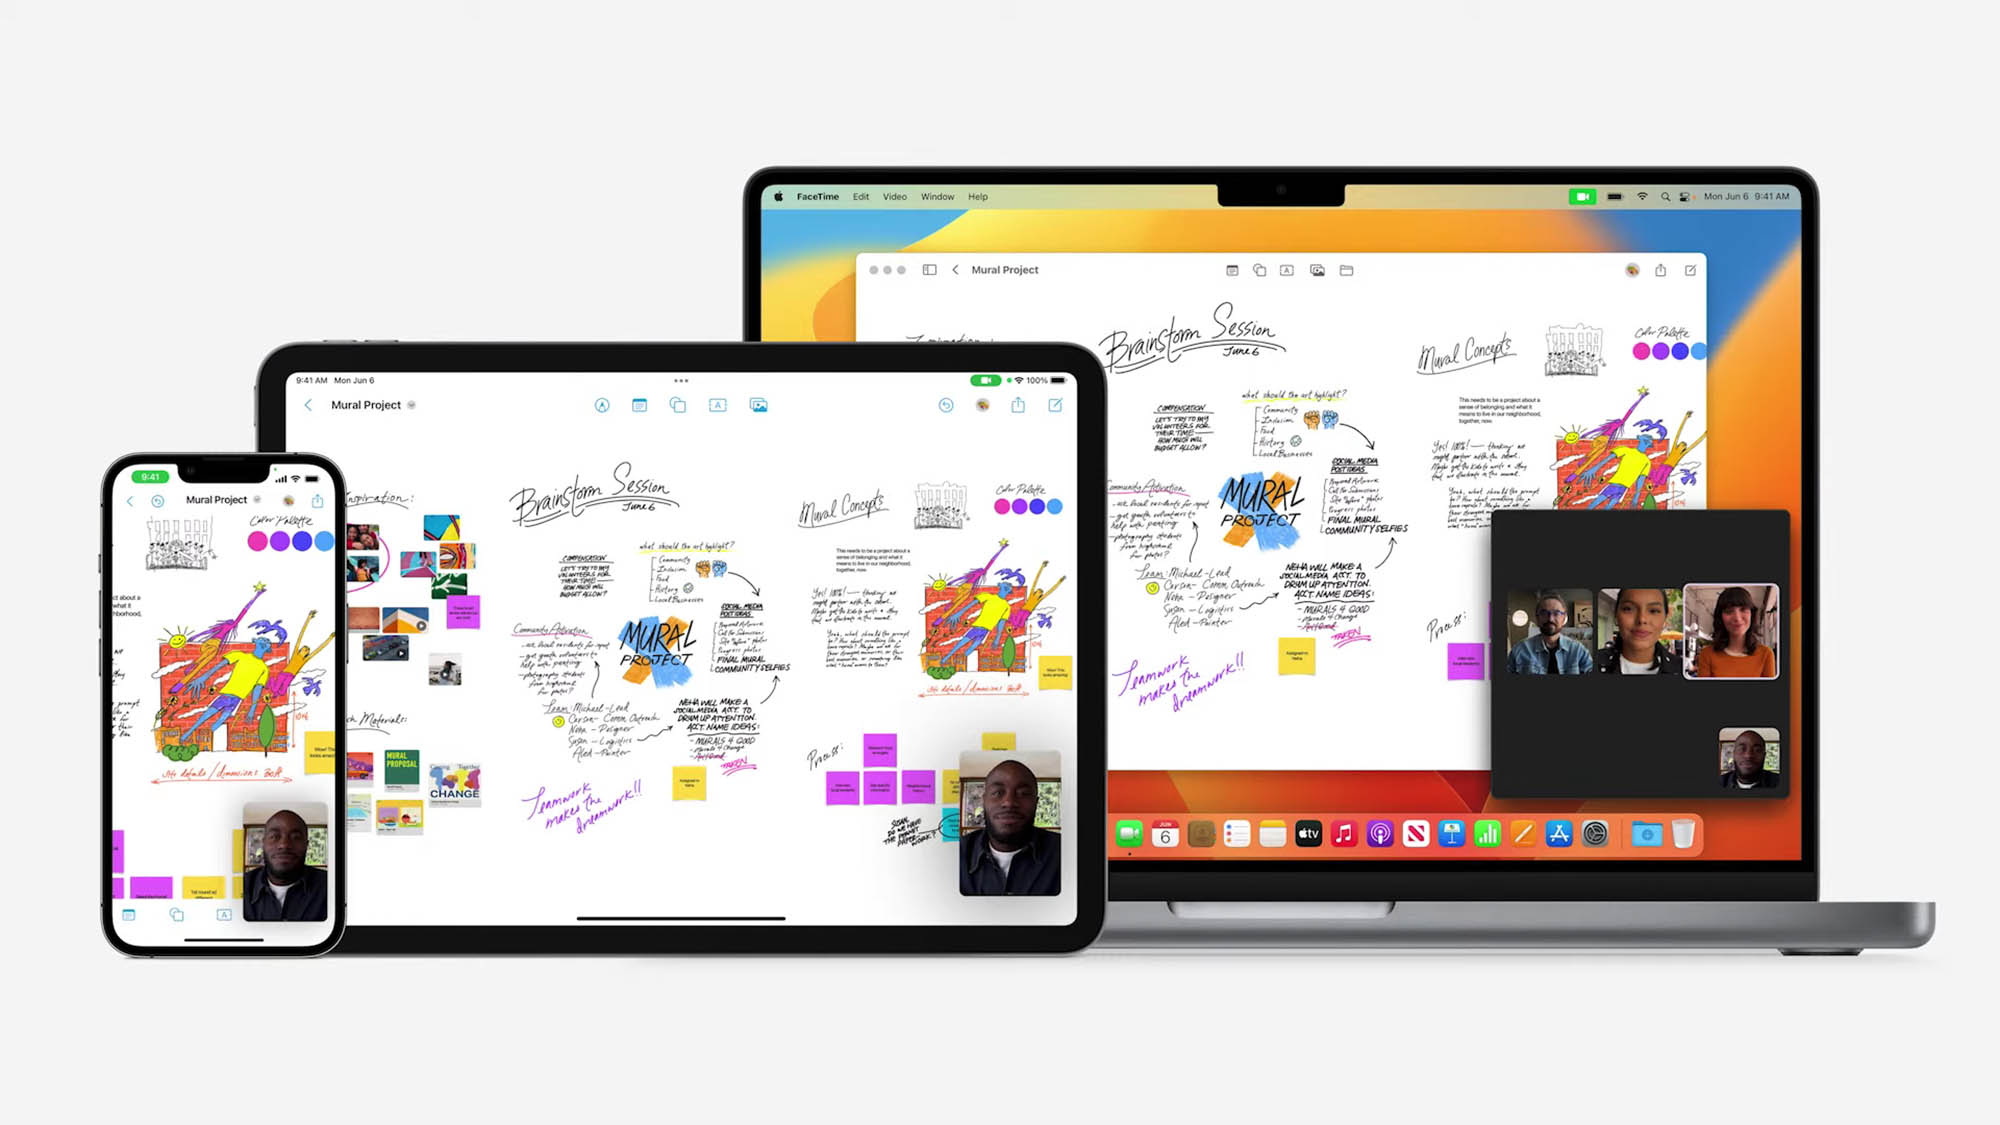 L'app FreeForm appena introdotta che consente agli utenti che collaborano di accedere a una sorta di lavagna digitale. L'app viene visualizzata su iPhone, iPad e Macbook.